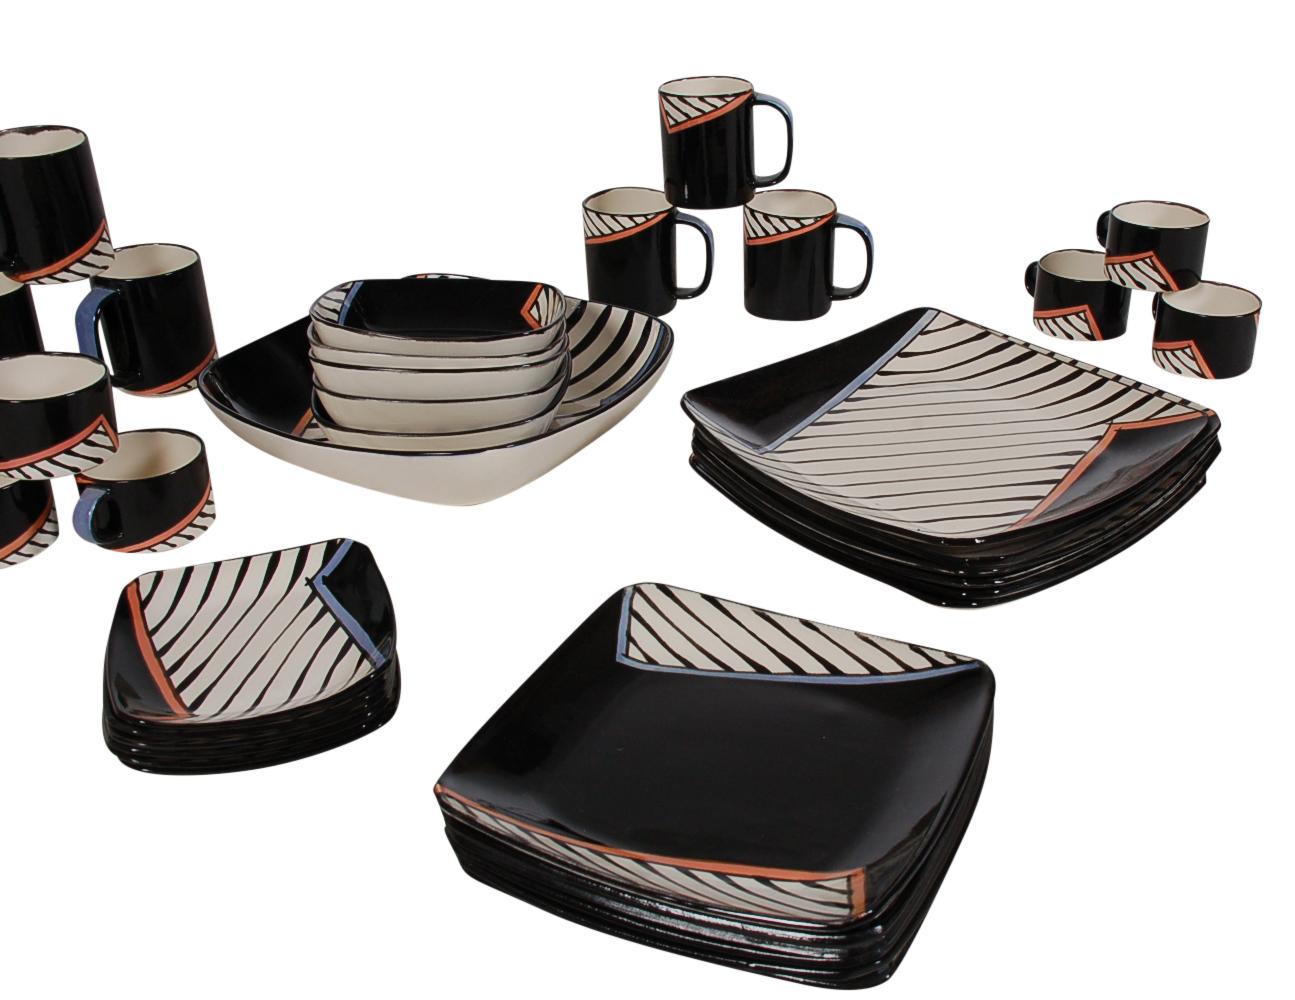 Un grand ensemble de vaisselle et de service à café/thé en porcelaine faite main, conçu par Dorothy Hafner pour Tiffany & Co. en 1982. L'ensemble est vendu comme un service pour six personnes, moins un bol à soupe. Comprend 6 grandes assiettes à